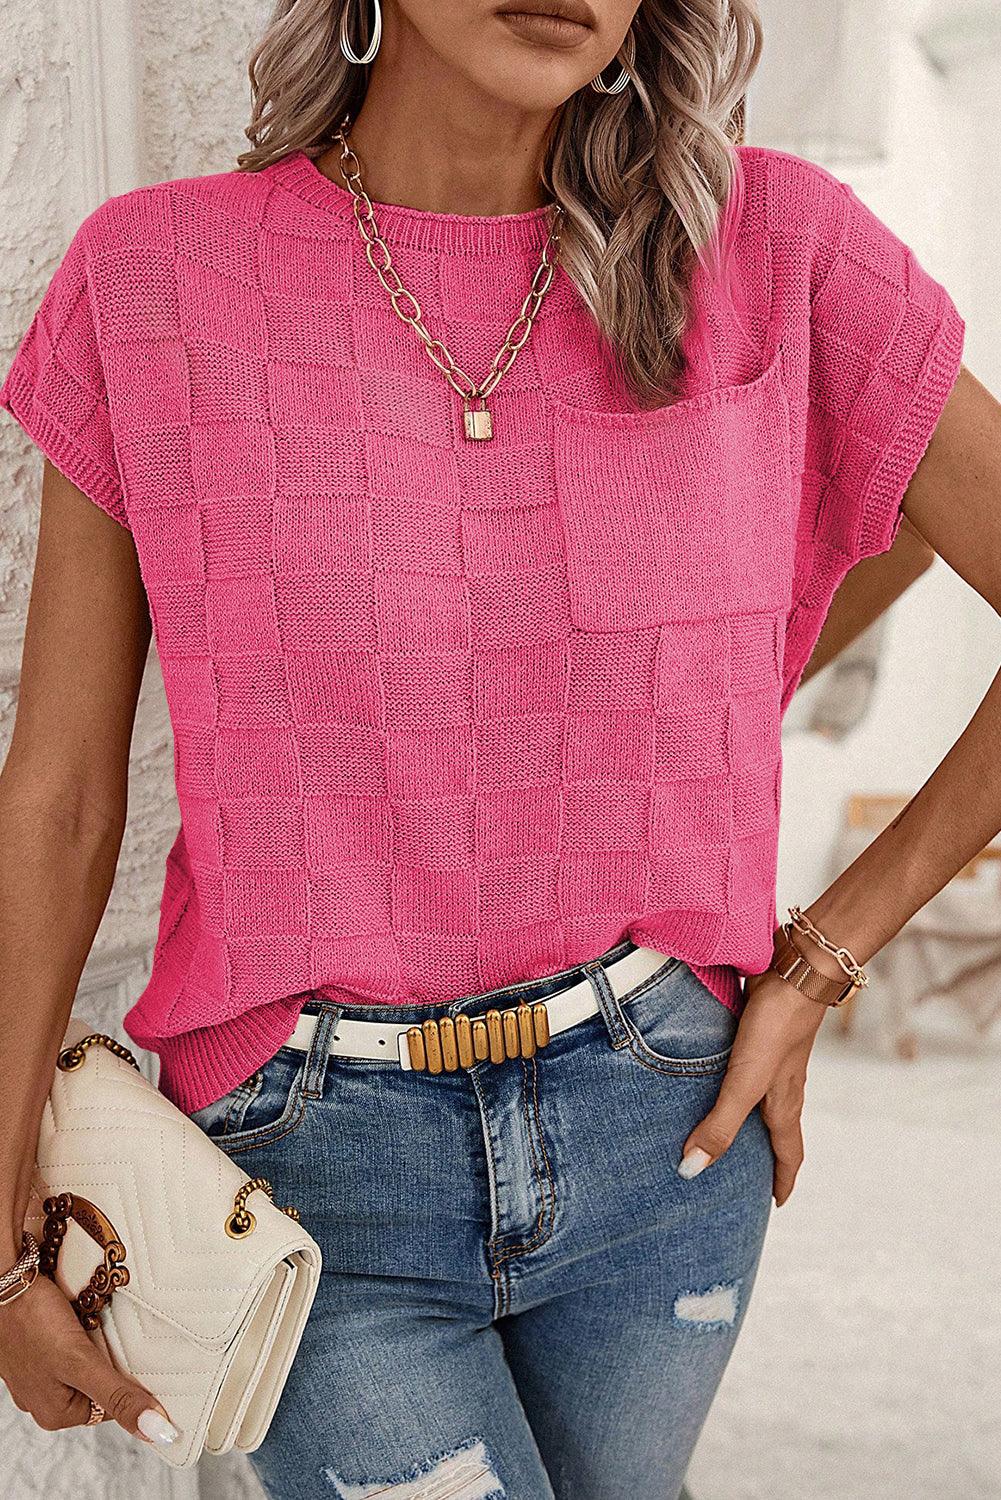 Bright Pink Lattice Textured Knit Short Sleeve Sweater - L & M Kee, LLC